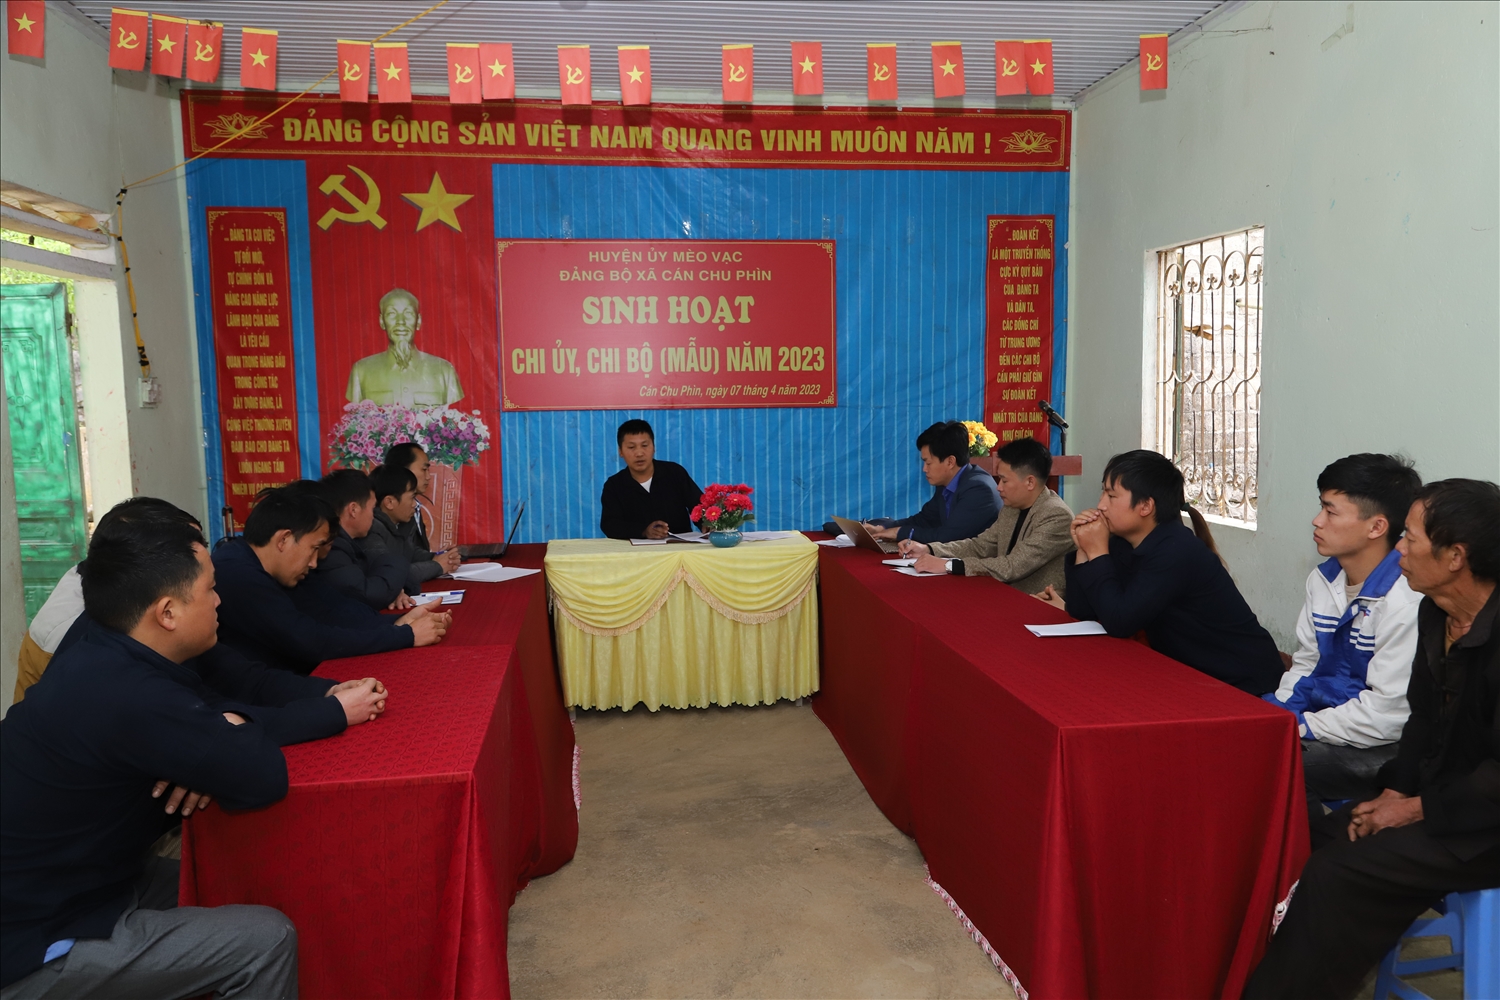 Chi bộ Há Dấu Cò thuộc Đảng bộ xã Cán Chu Phìn tổ chức sinh hoạt chi bộ mẫu để rút kinh nghiệm trong công tác tổ chức sinh hoạt định kỳ